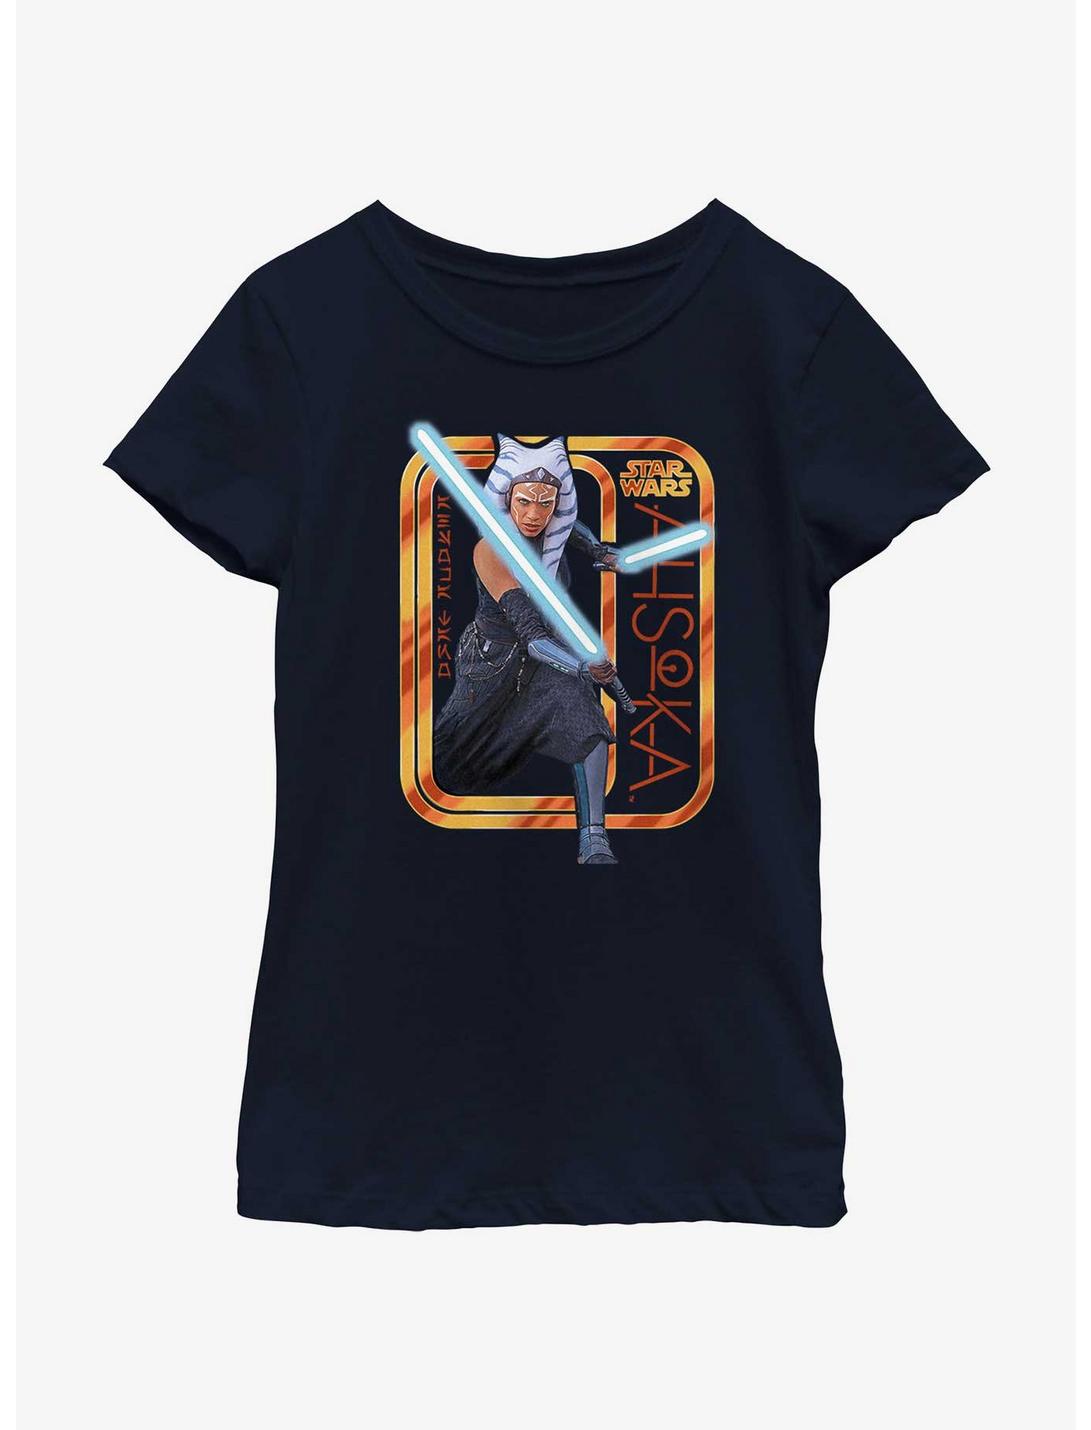 Star Wars Ahsoka Saber Badge Youth Girls T-Shirt, NAVY, hi-res